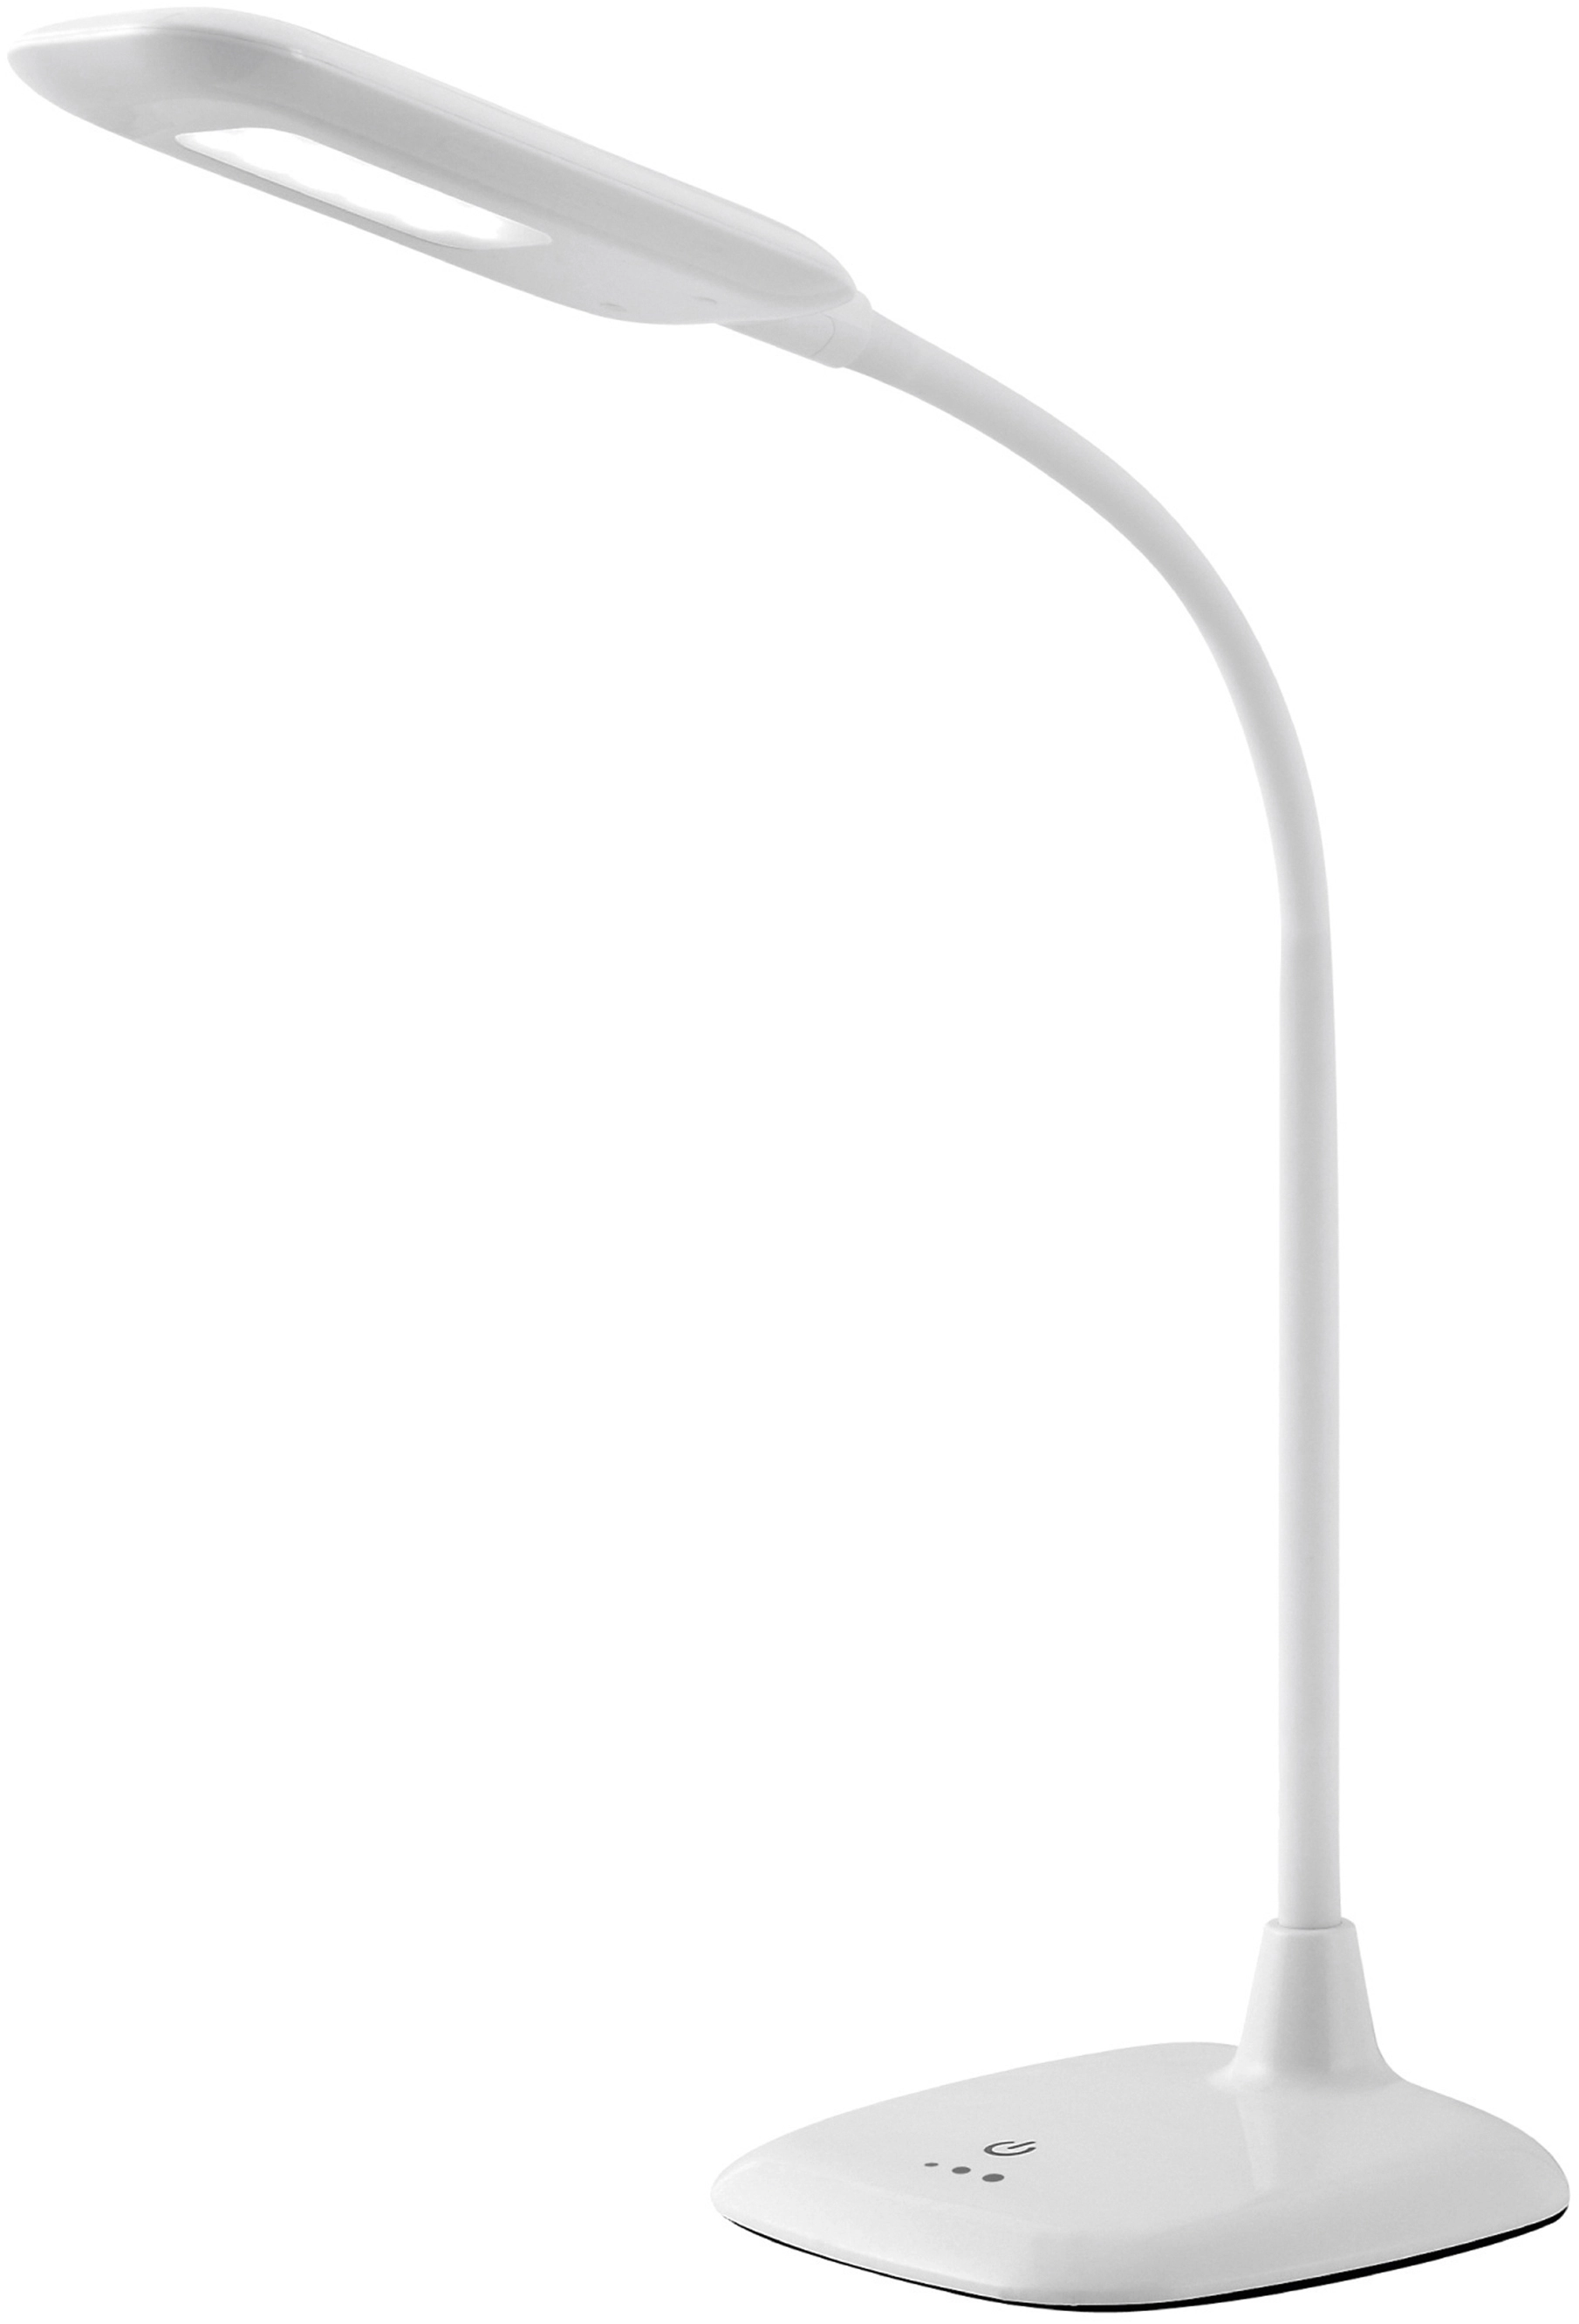 Brilliant LED-Tischlampe Nele 5 mit W Weiß kaufen bei Touchdimmer OBI